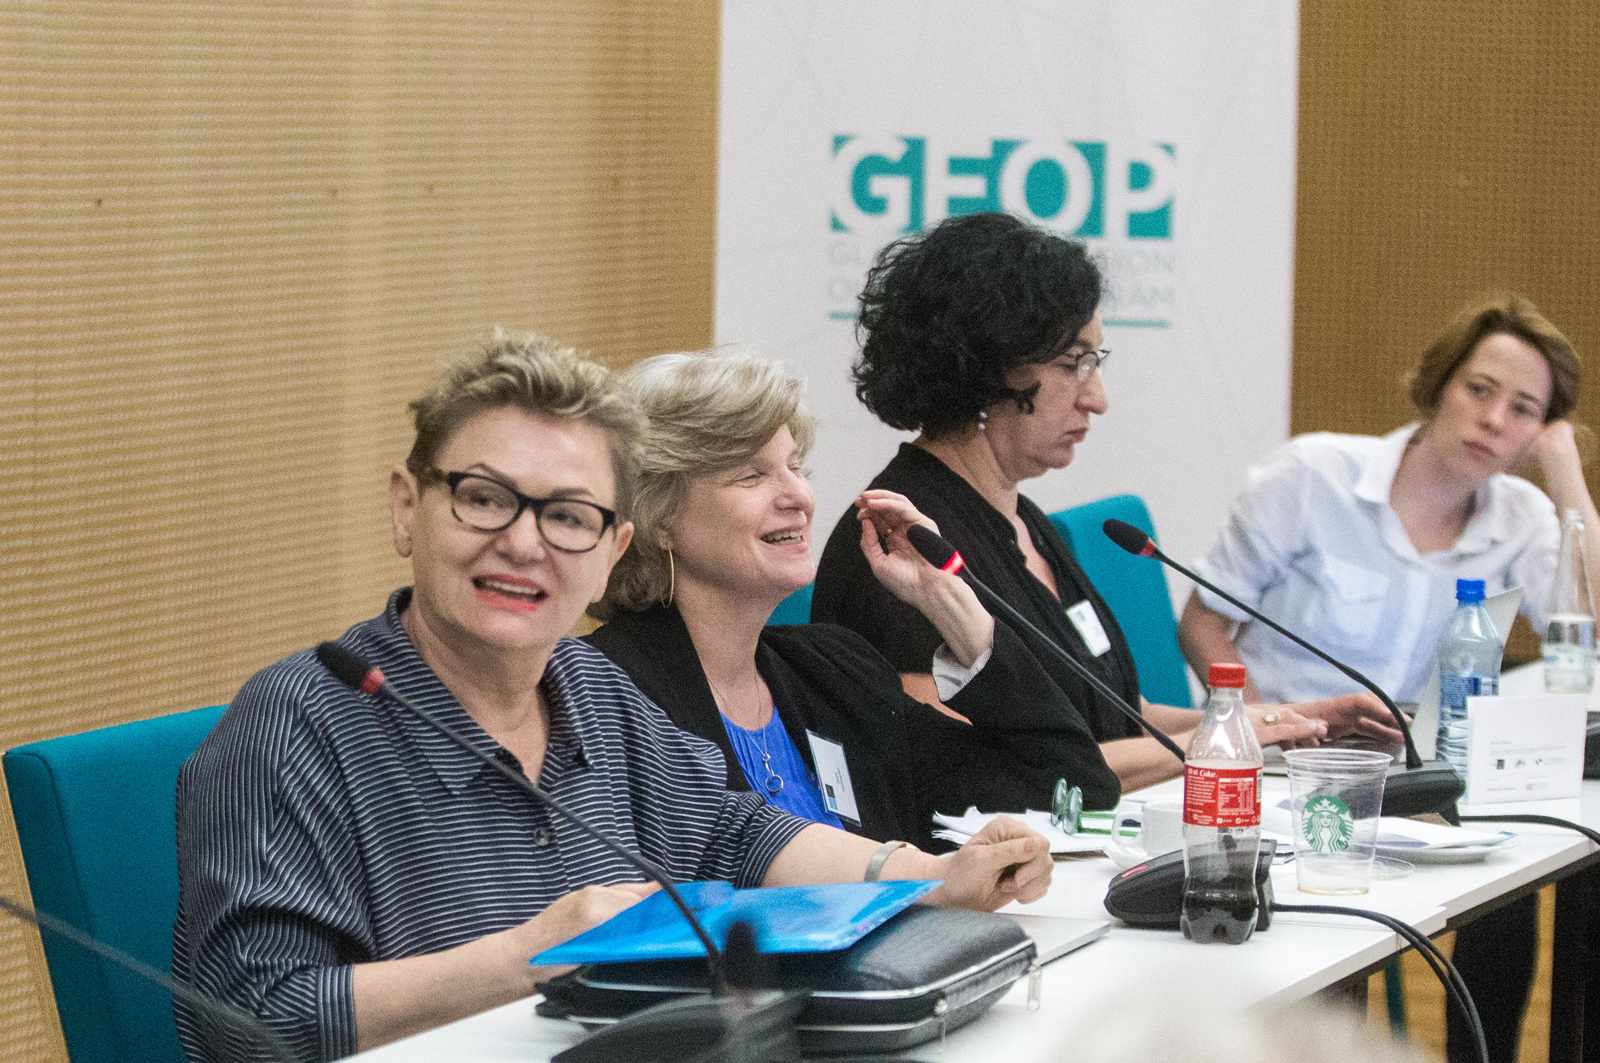 Warsztaty GEOP - cztery kobiety siedzą przy stole konferencyjnym, przed nimi mikrofony, notatki i skrypty, Kobieta pierwsza od lewej jest zwrócona twarzą do oglądających i mówi do osób poza kadrem zdjęcia.